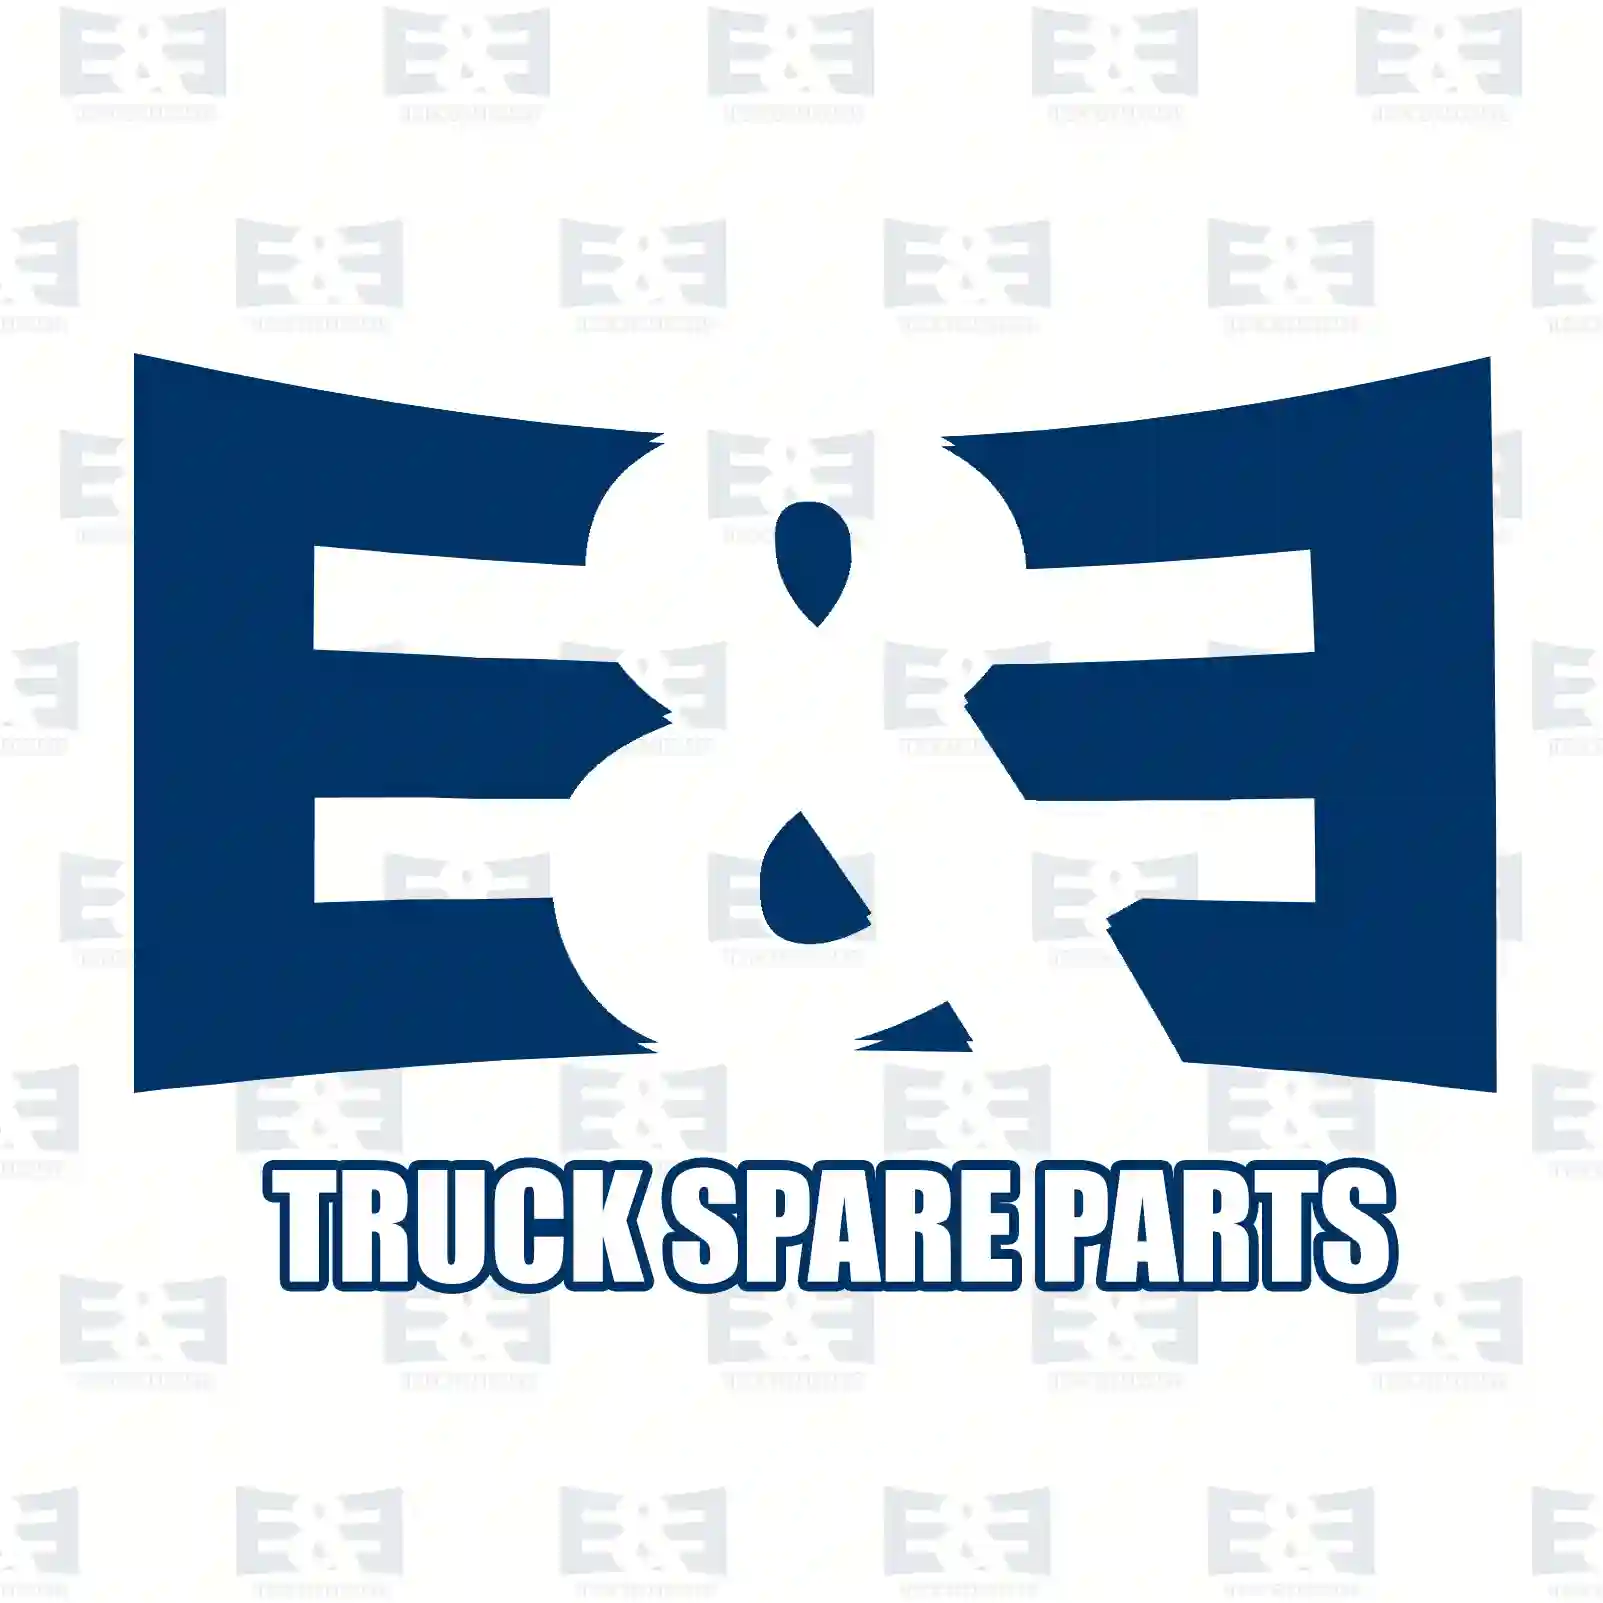 O-ring, 2E2285940, 804665, 810970, ZG02845-0008, ||  2E2285940 E&E Truck Spare Parts | Truck Spare Parts, Auotomotive Spare Parts O-ring, 2E2285940, 804665, 810970, ZG02845-0008, ||  2E2285940 E&E Truck Spare Parts | Truck Spare Parts, Auotomotive Spare Parts